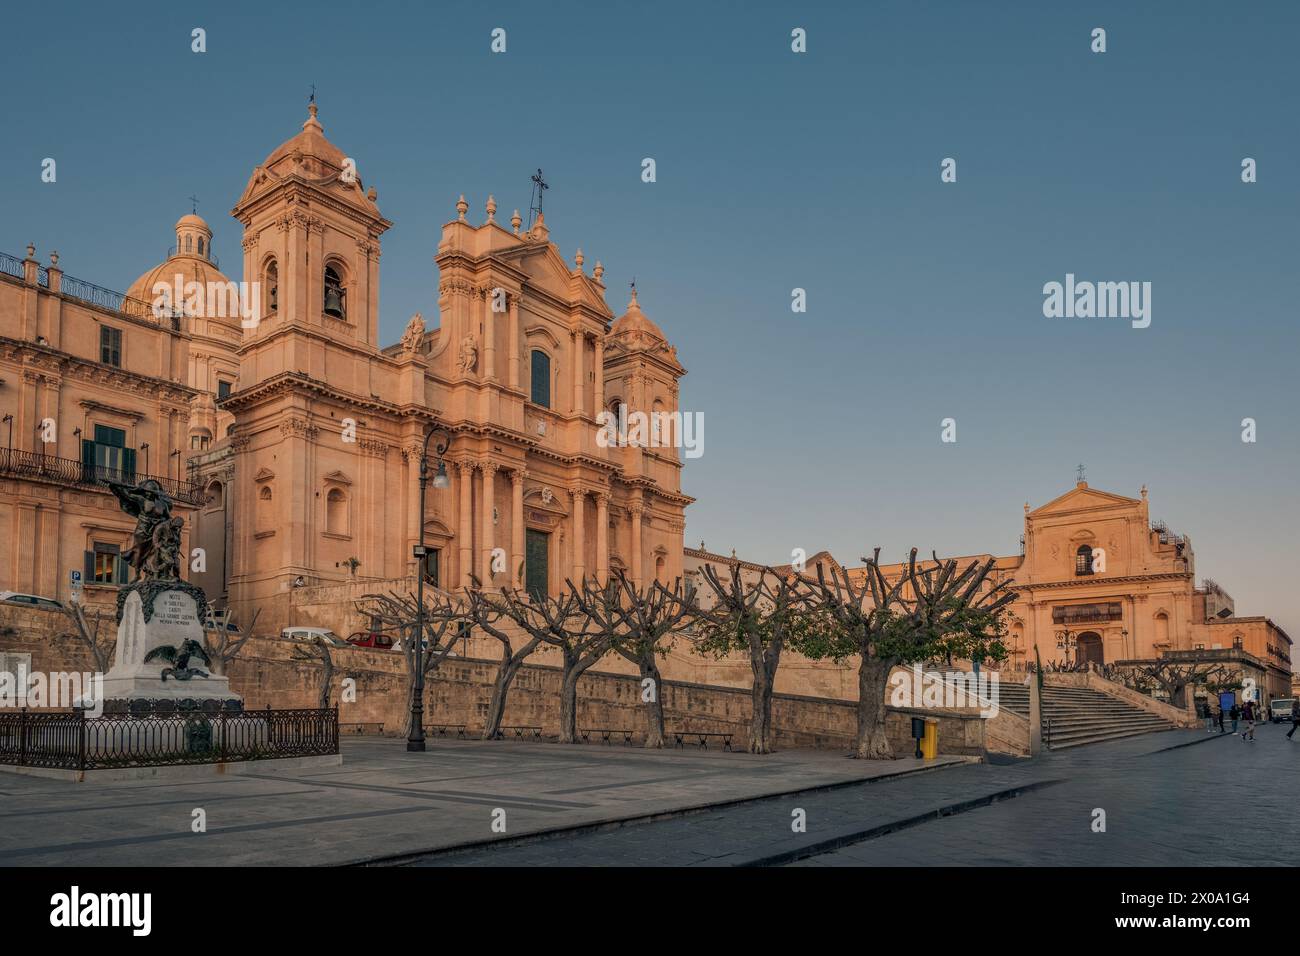 La strada principale e la piazza principale della città barocca di noto sotto la luce del tramonto, provincia di Siracusa, Sicilia, Italia Foto Stock